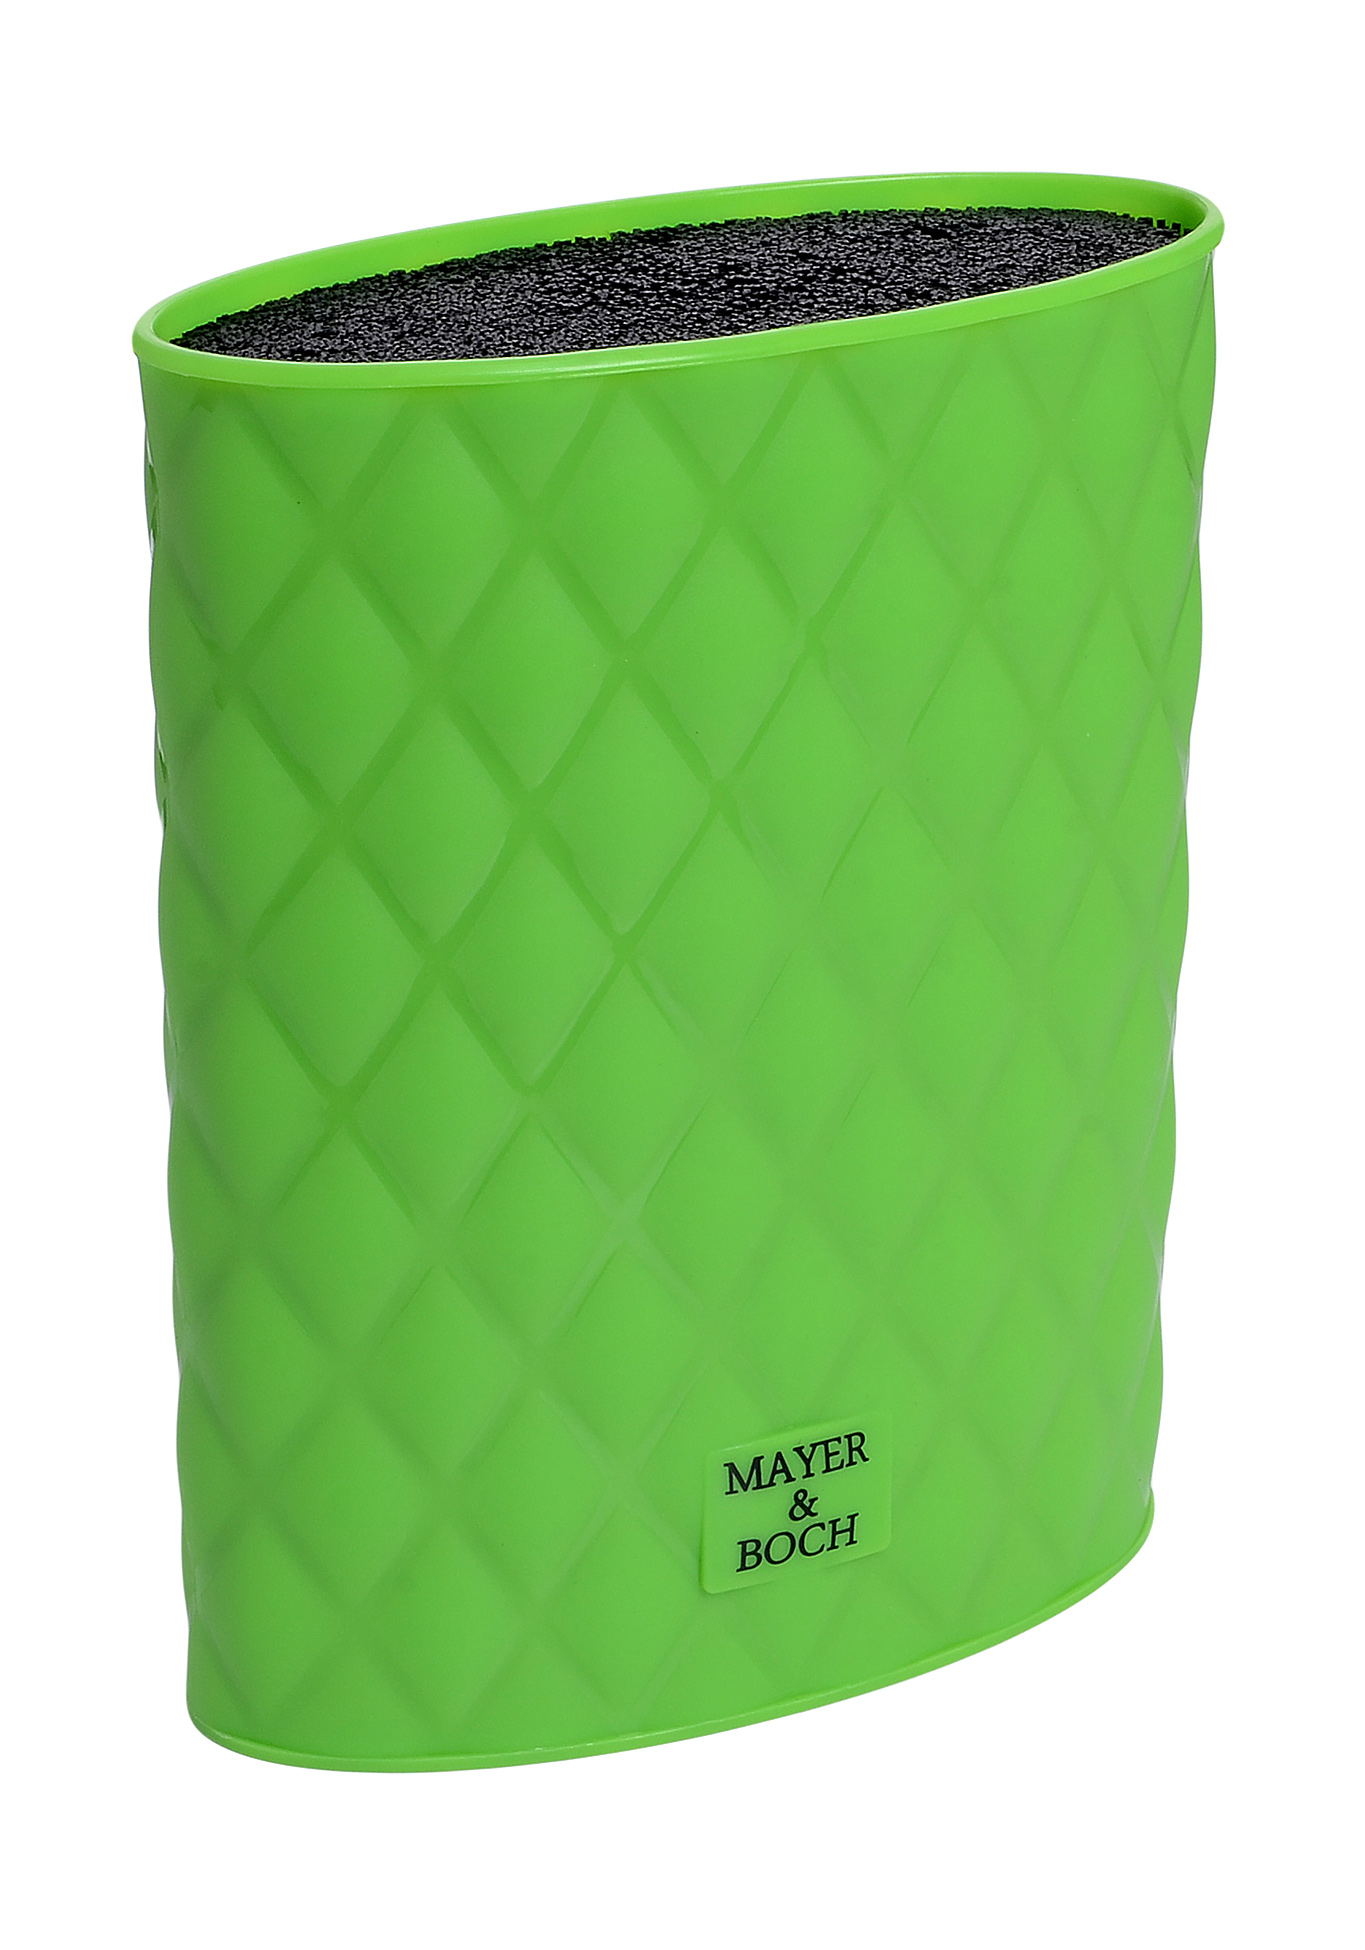 Универсальная подставка для ножей Mayer&Boch, цвет зеленый, размер 22 см - фото 2